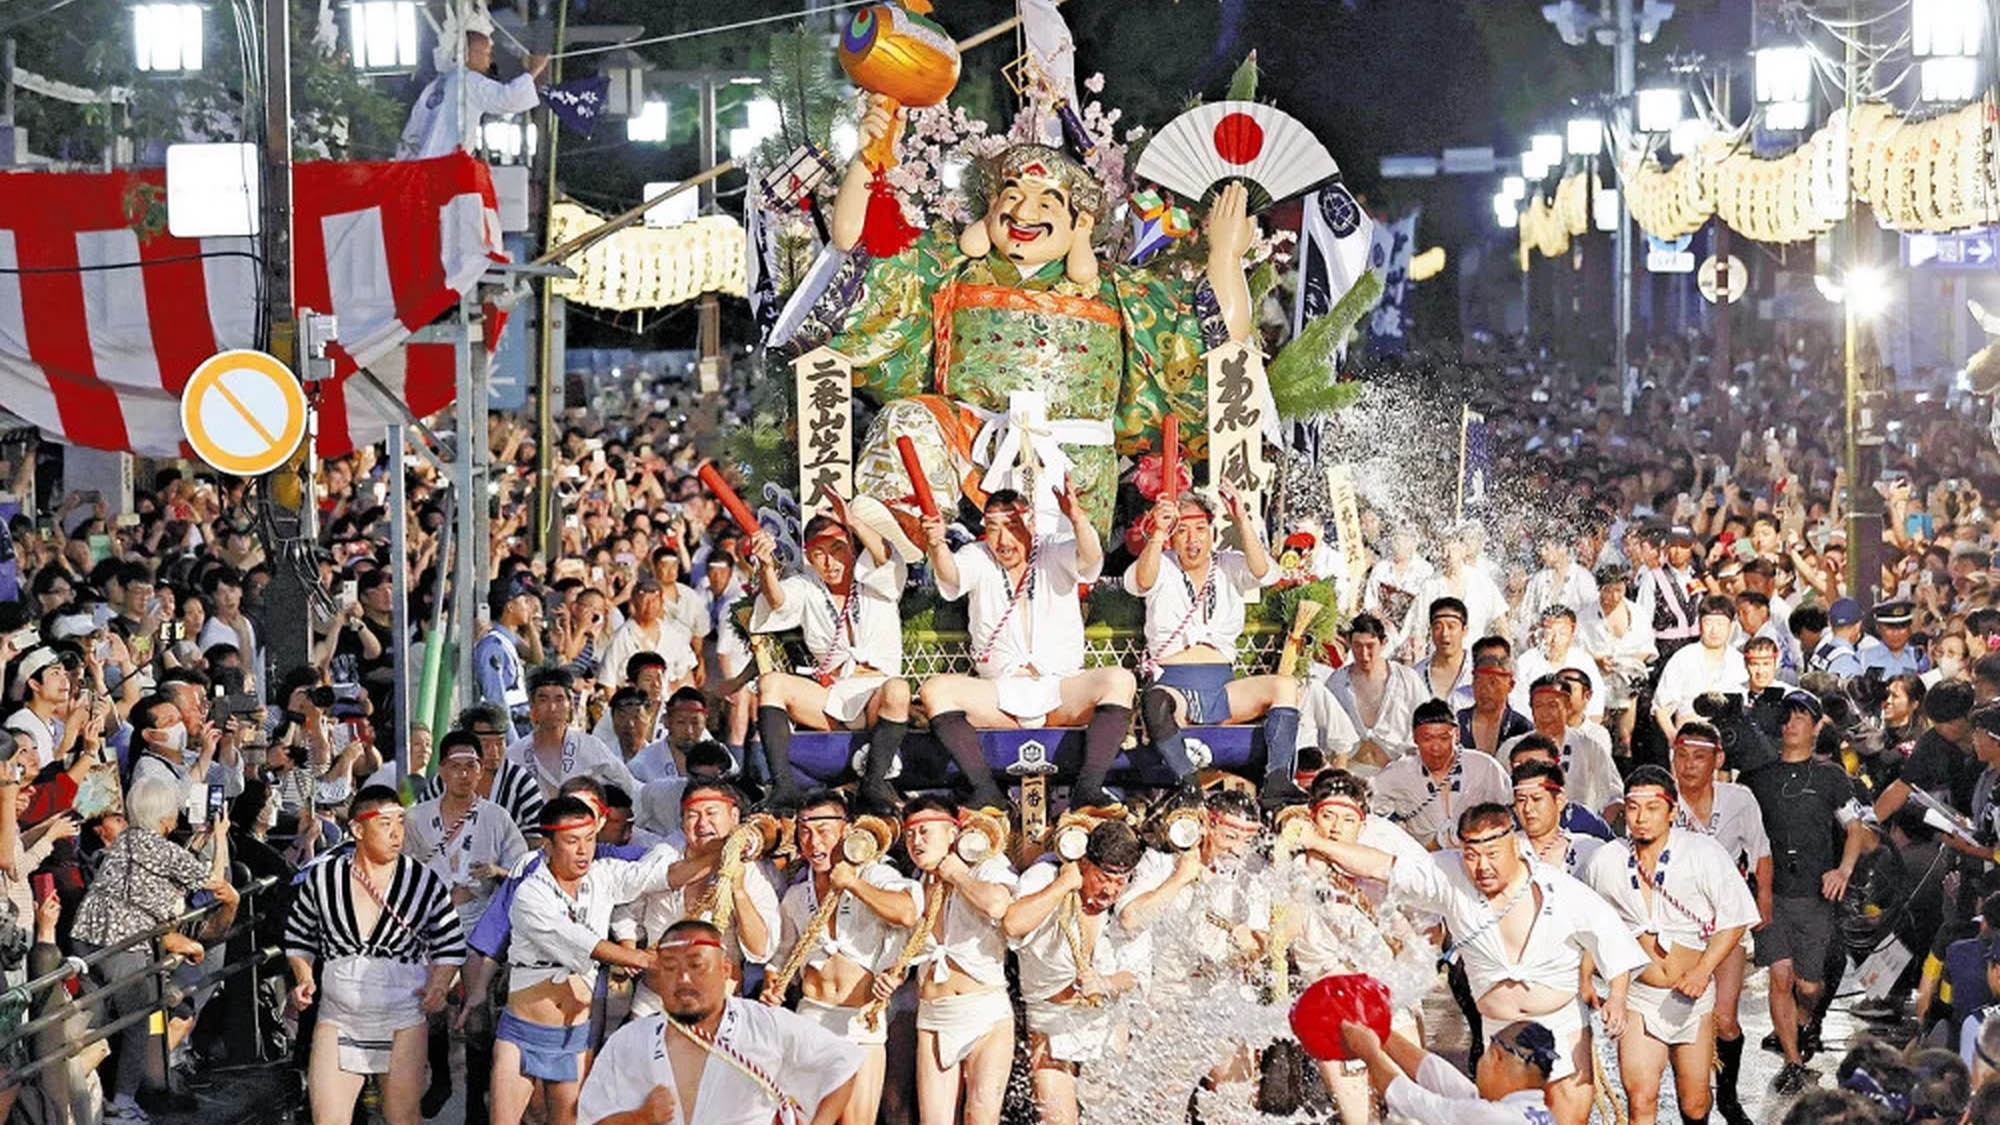 【櫛田神社】博多祇園山笠国指定重要無形民俗文化財、ユネスコ無形文化遺産に登録されています。